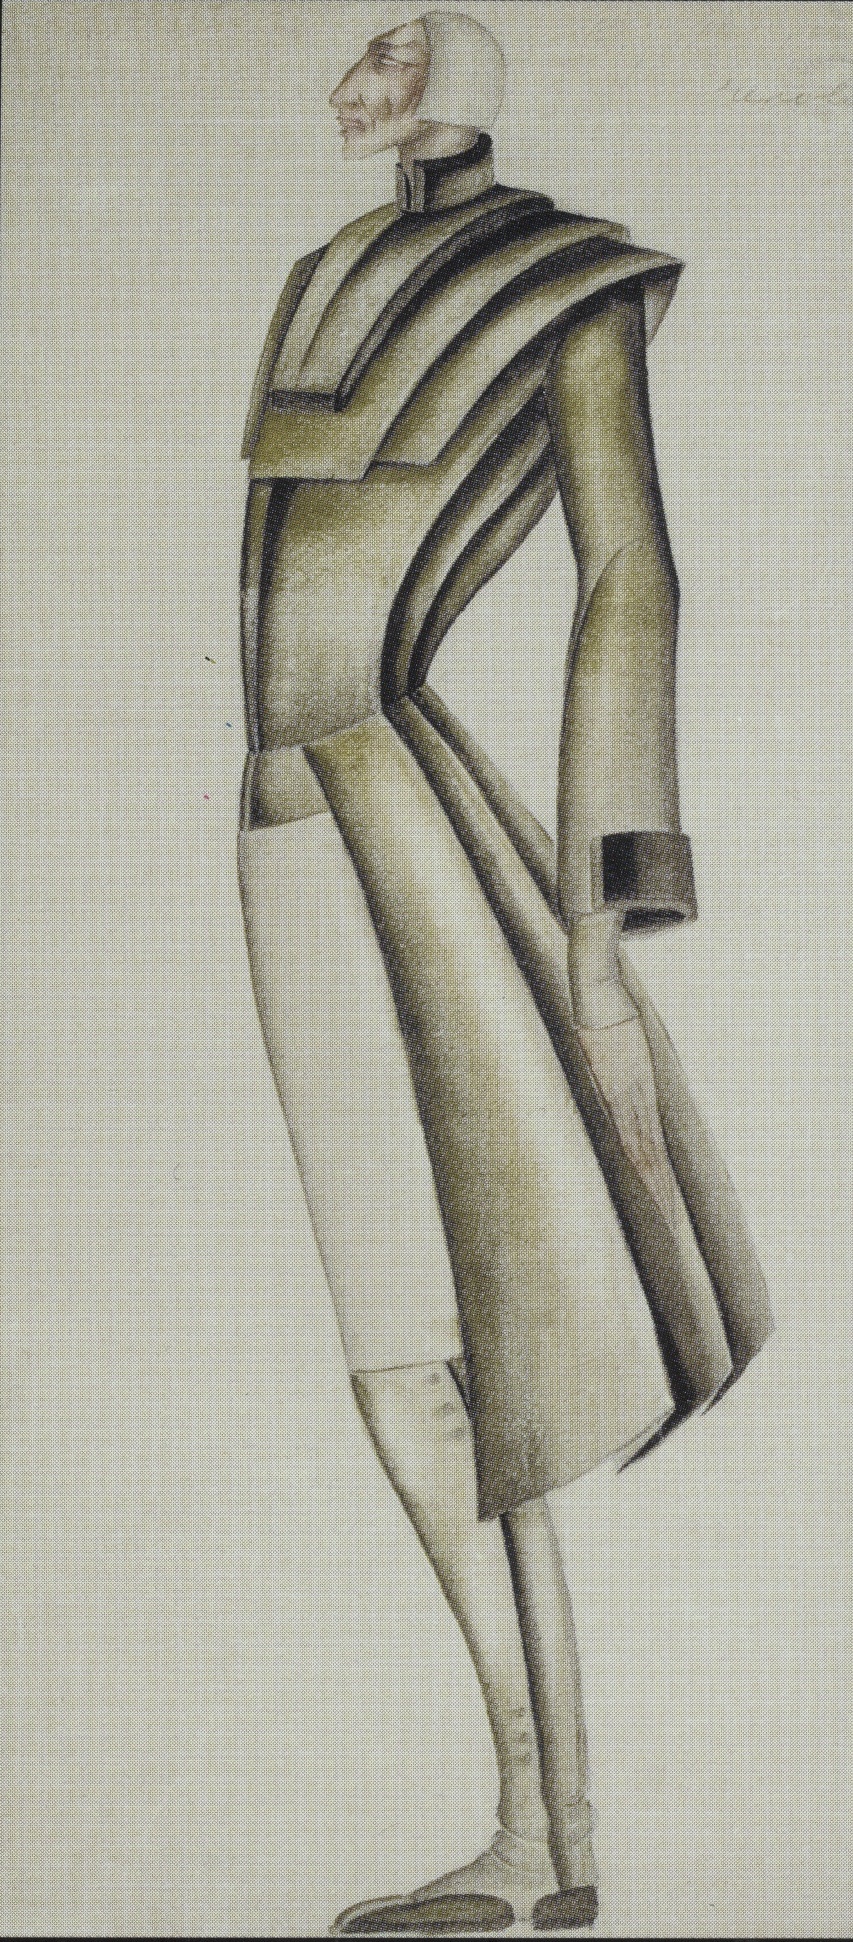 ქაღალდი, აქვარელი, 39X19  1932  თეატრის, მუსიკის, კინოსა და ქორეოგრაფიის სახელმწიფო მუზეუმი